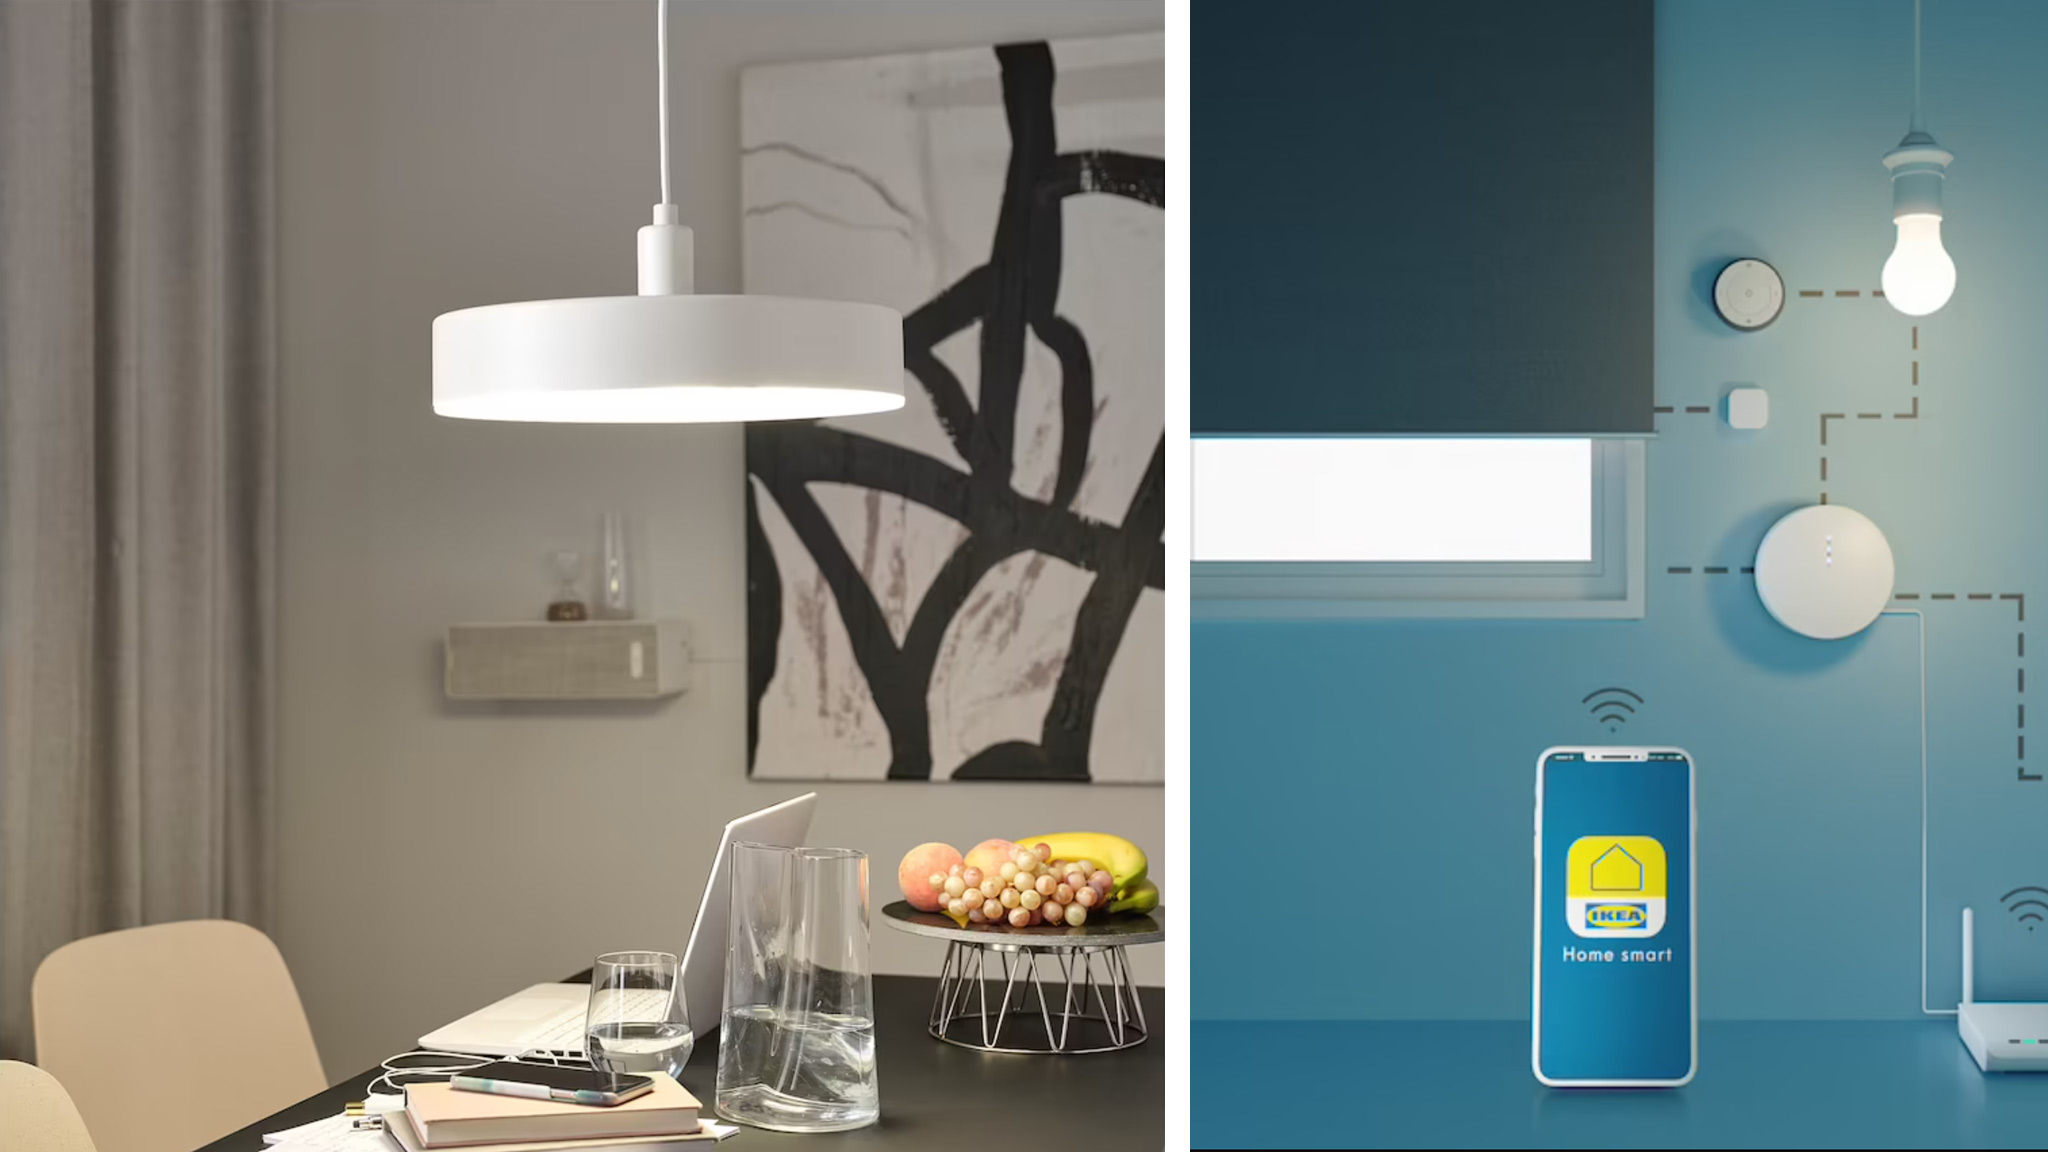 IKEA Nymane: Lampe arbeitet mit IKEA-Home-Smart-App zusammen - COMPUTER BILD